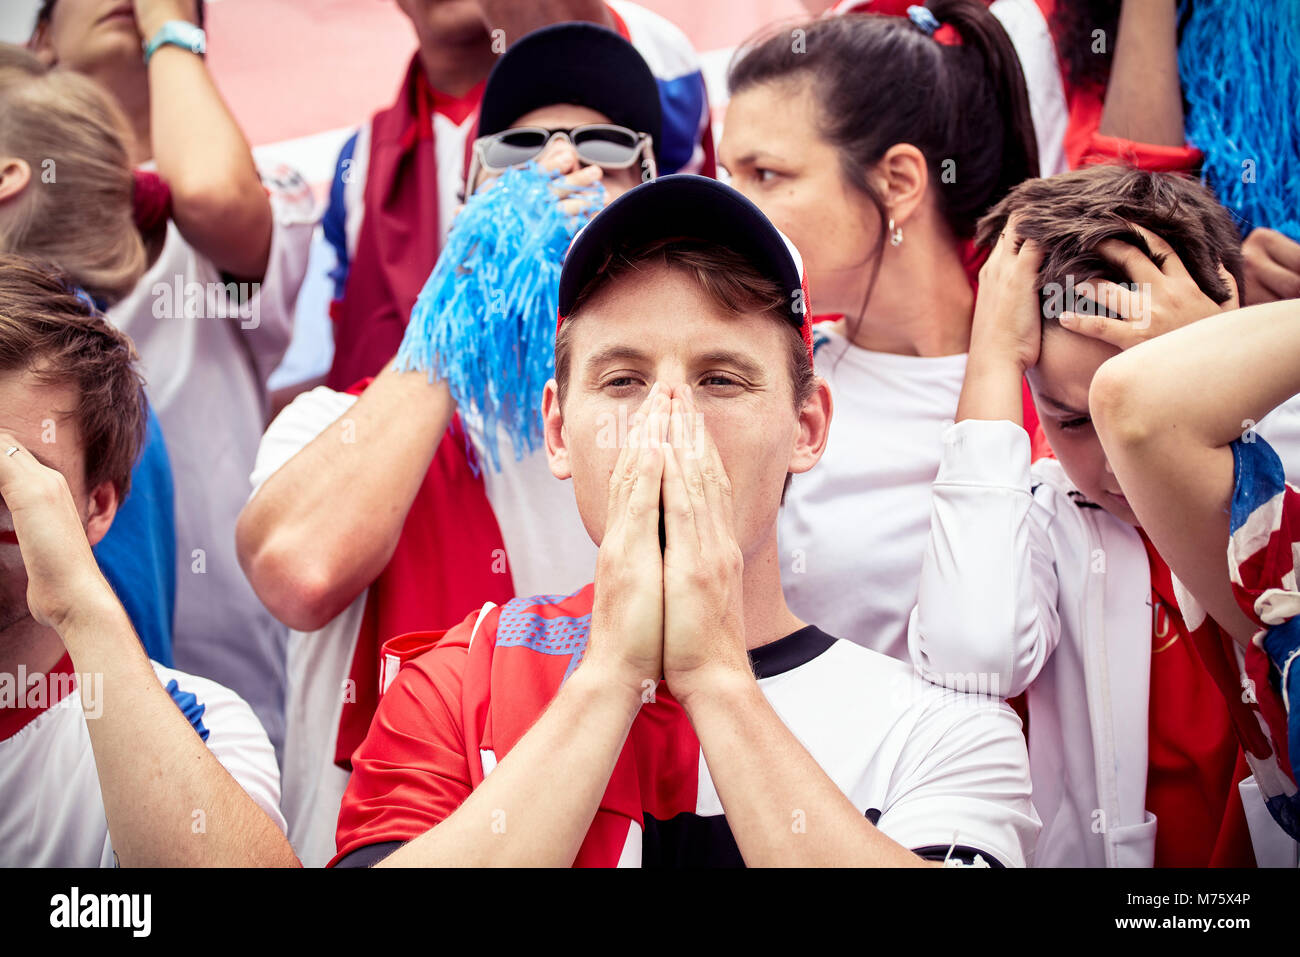 Los aficionados al fútbol expresando su decepción al partido de fútbol Foto de stock